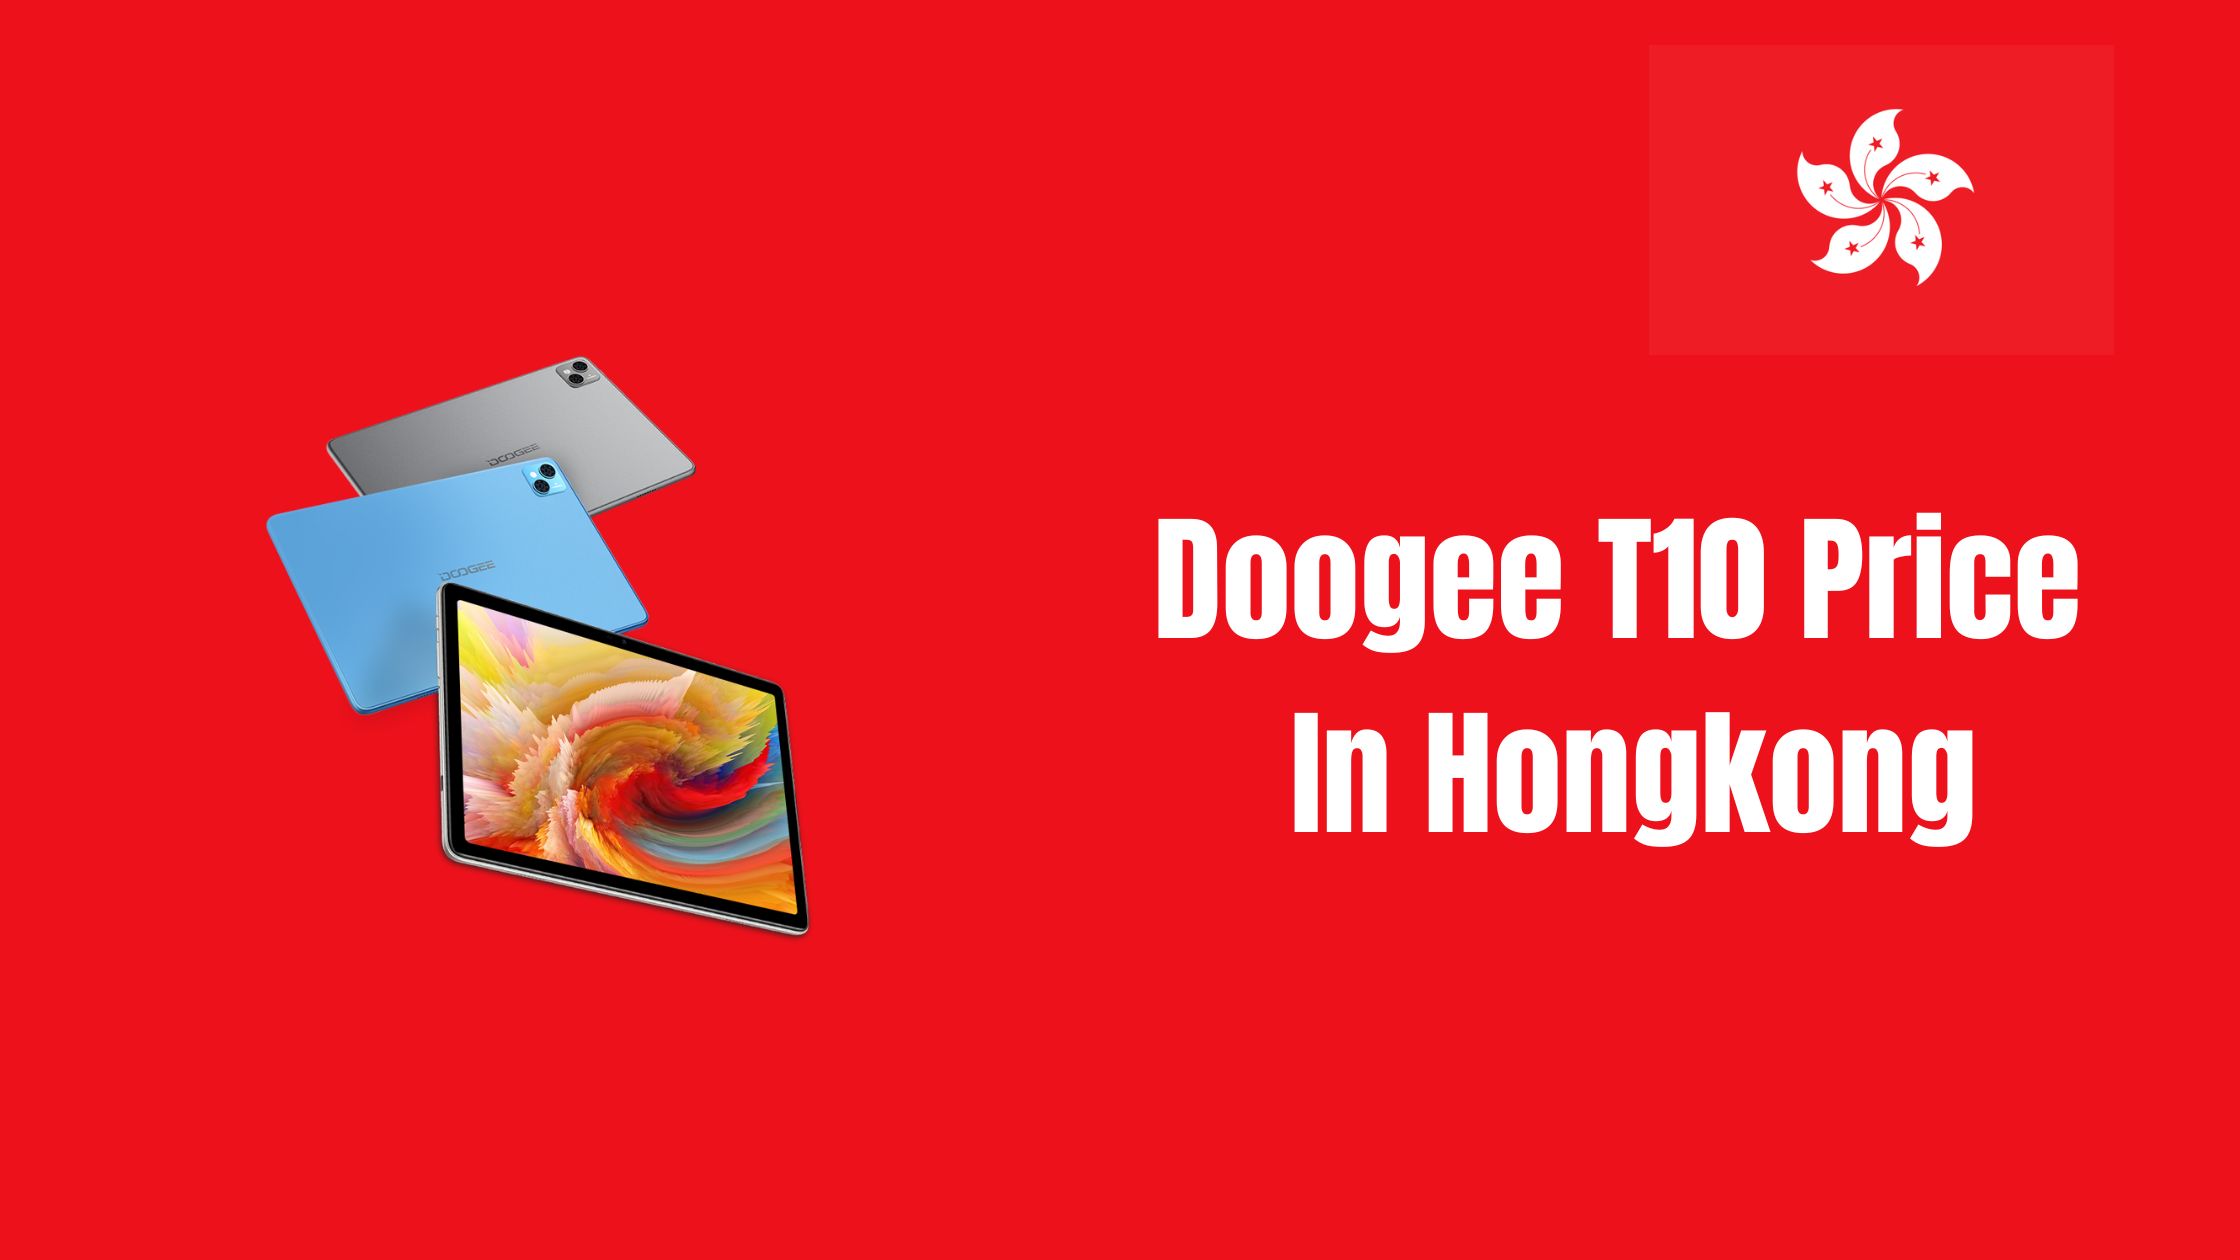 Doogee T10 Price In Hongkong